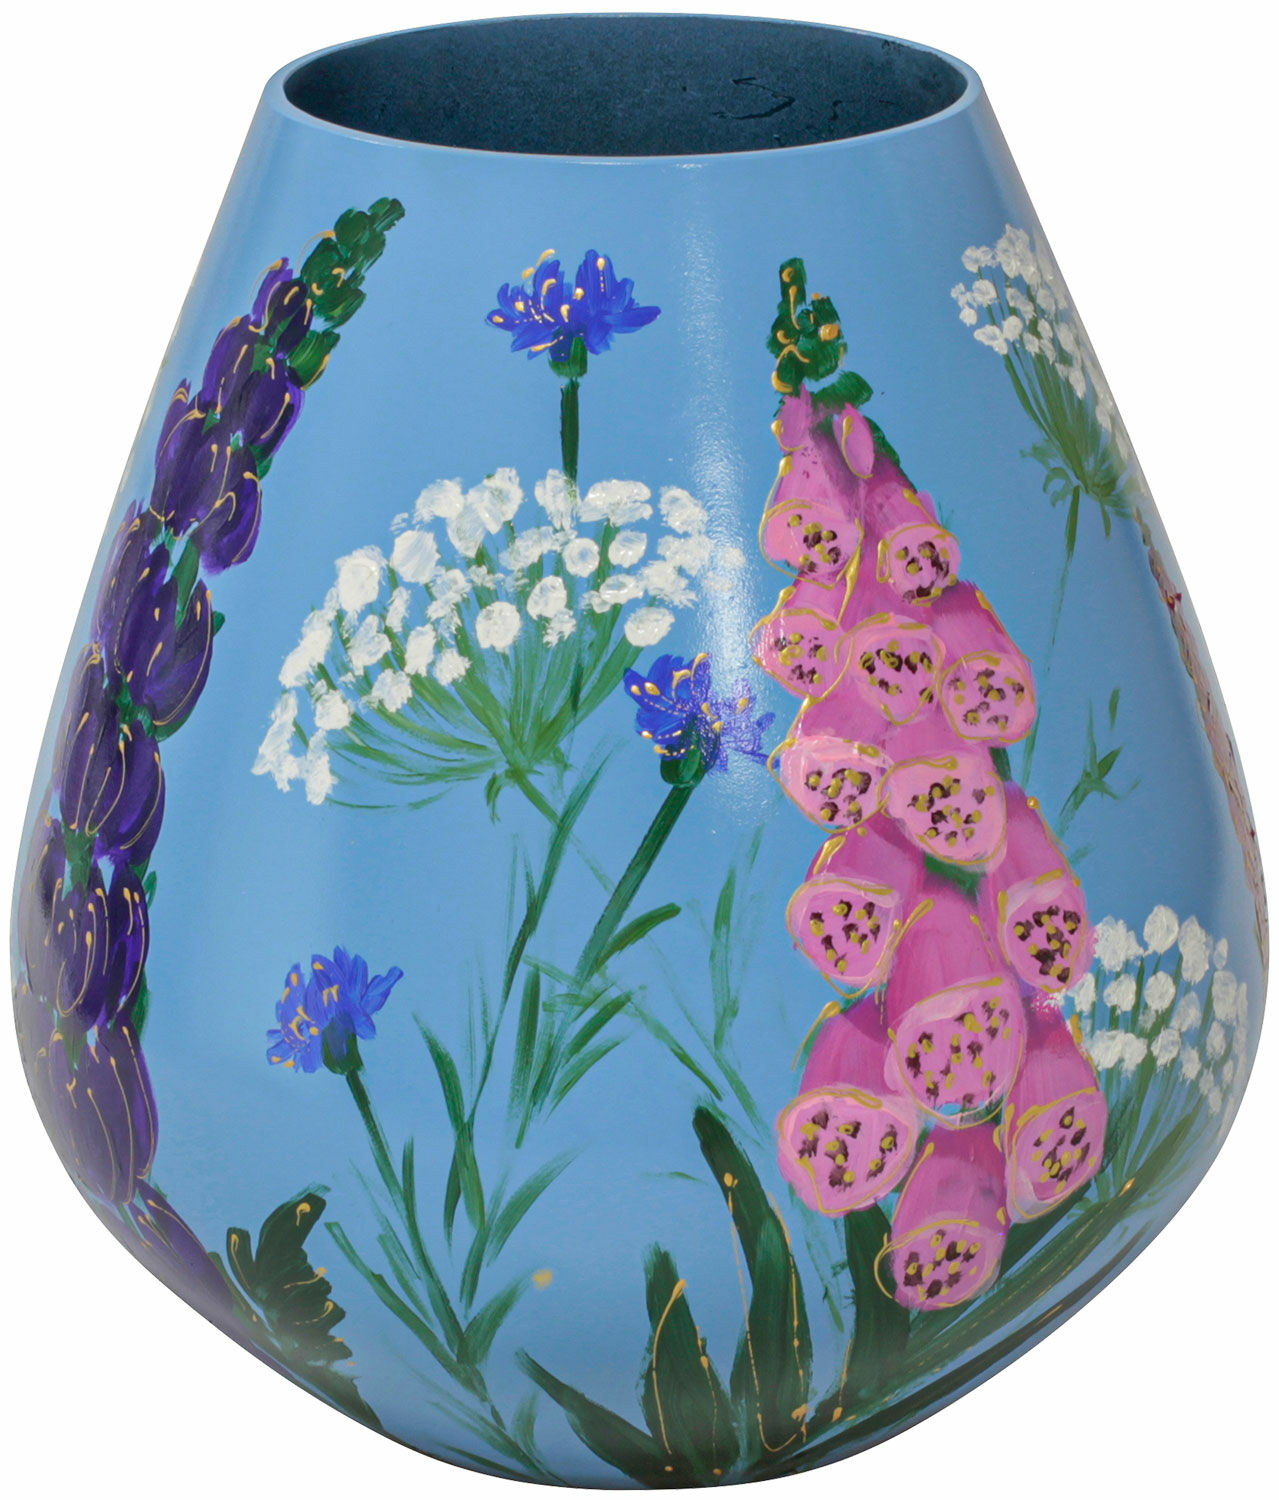 Glass vase "Flower Meadow" by Milou van Schaik Martinet